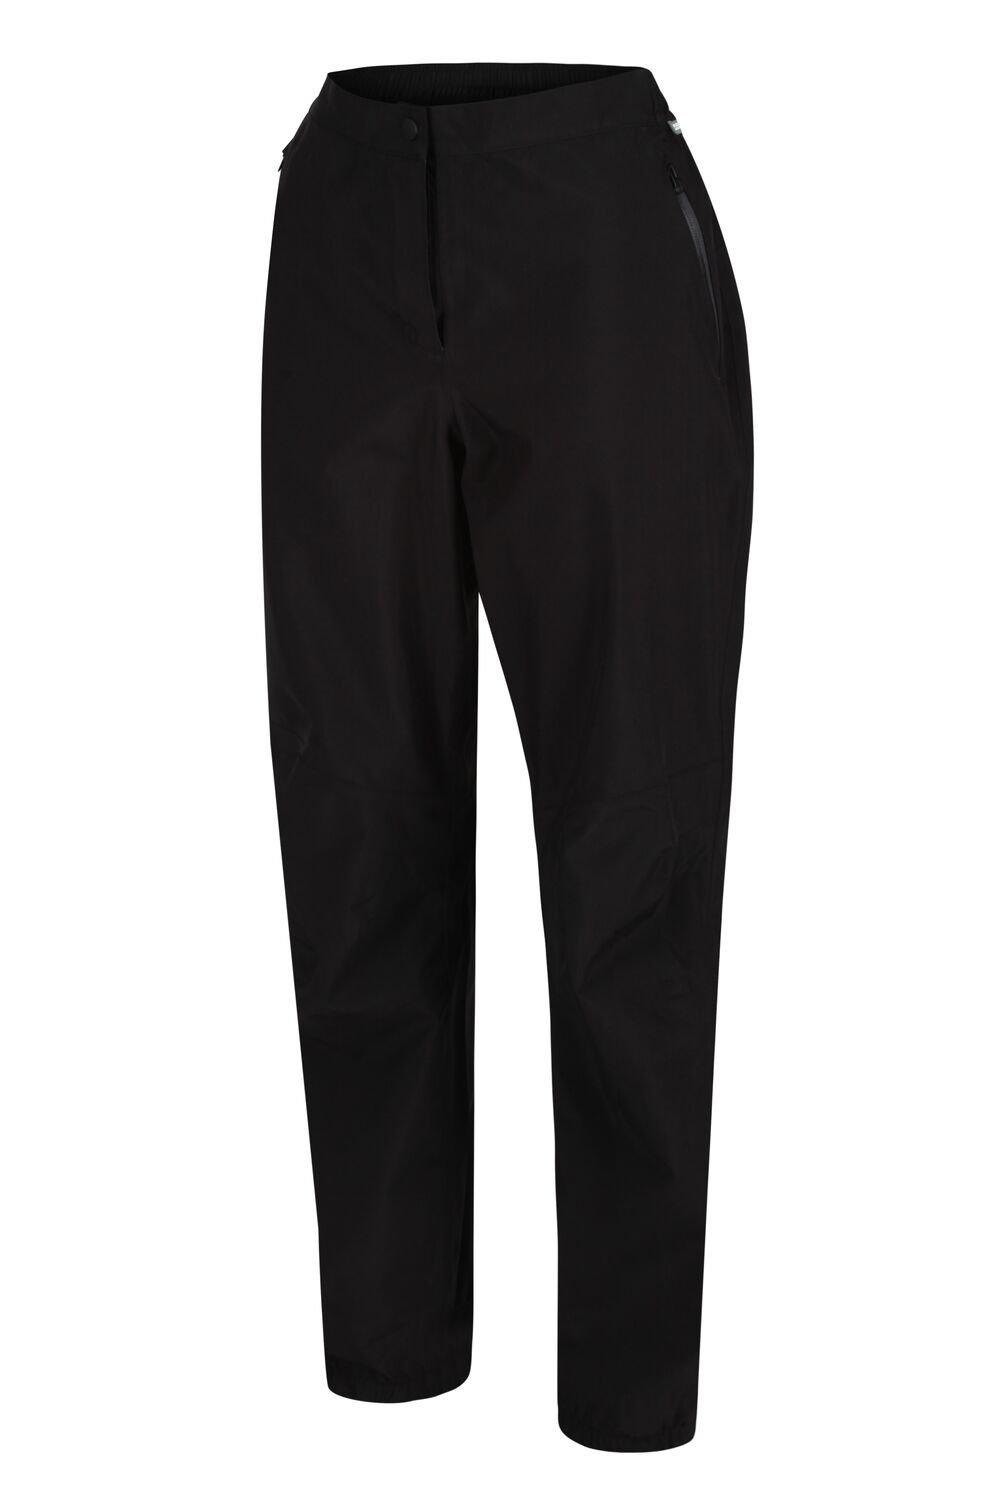 Прогулочные брюки Highton Stretch Regatta, черный отличные брюки карандаш мягкие женские эластичные узкие брюки до щиколотки длинные брюки женские леггинсы